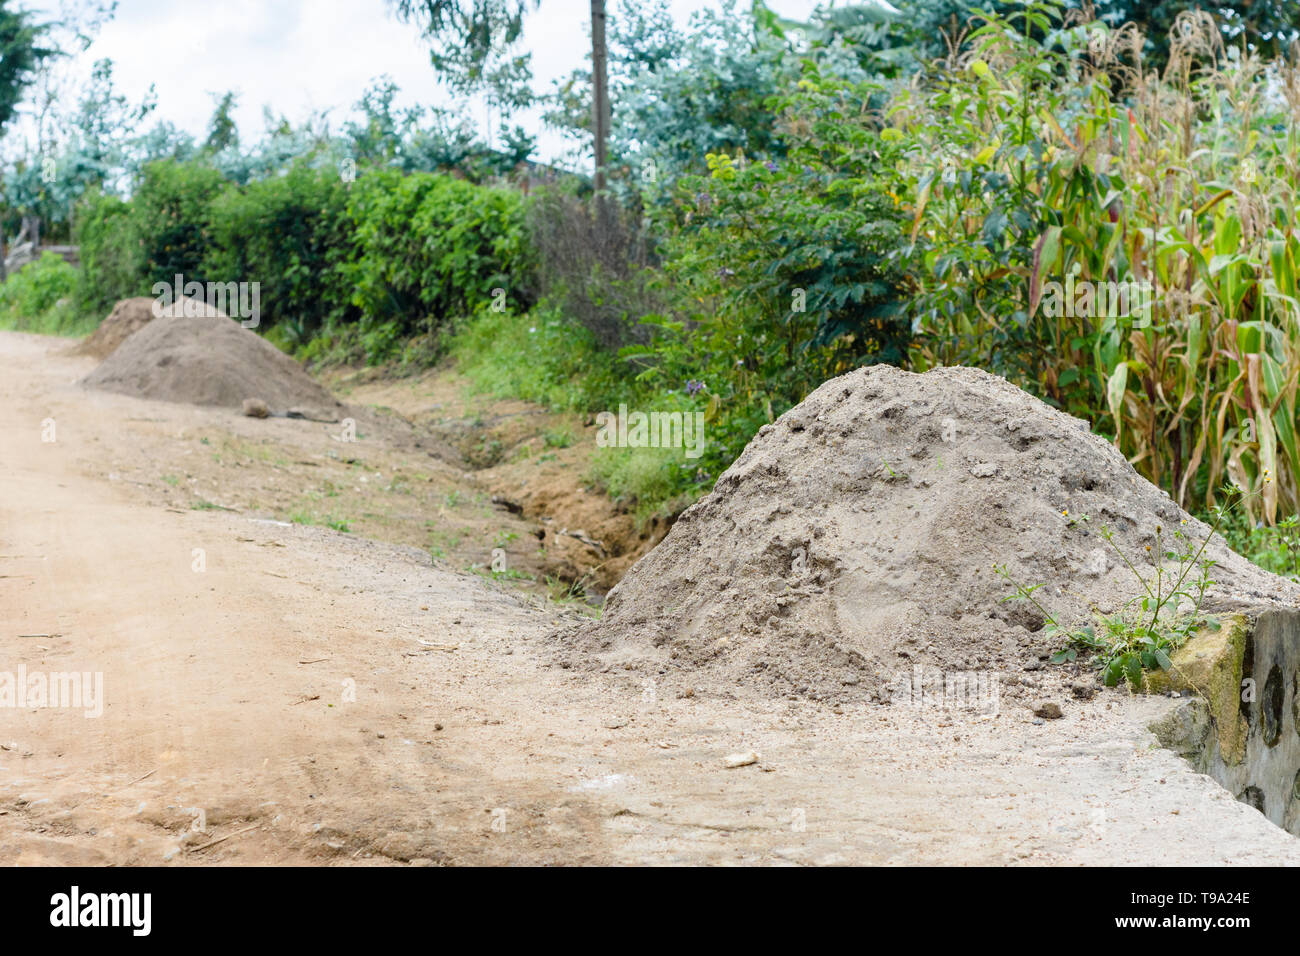 Le sable de construction creusée d'une rivière et entassé dans des piles pour la vente pour la construction sur le bord d'une route de terre dans un village du Malawi Banque D'Images